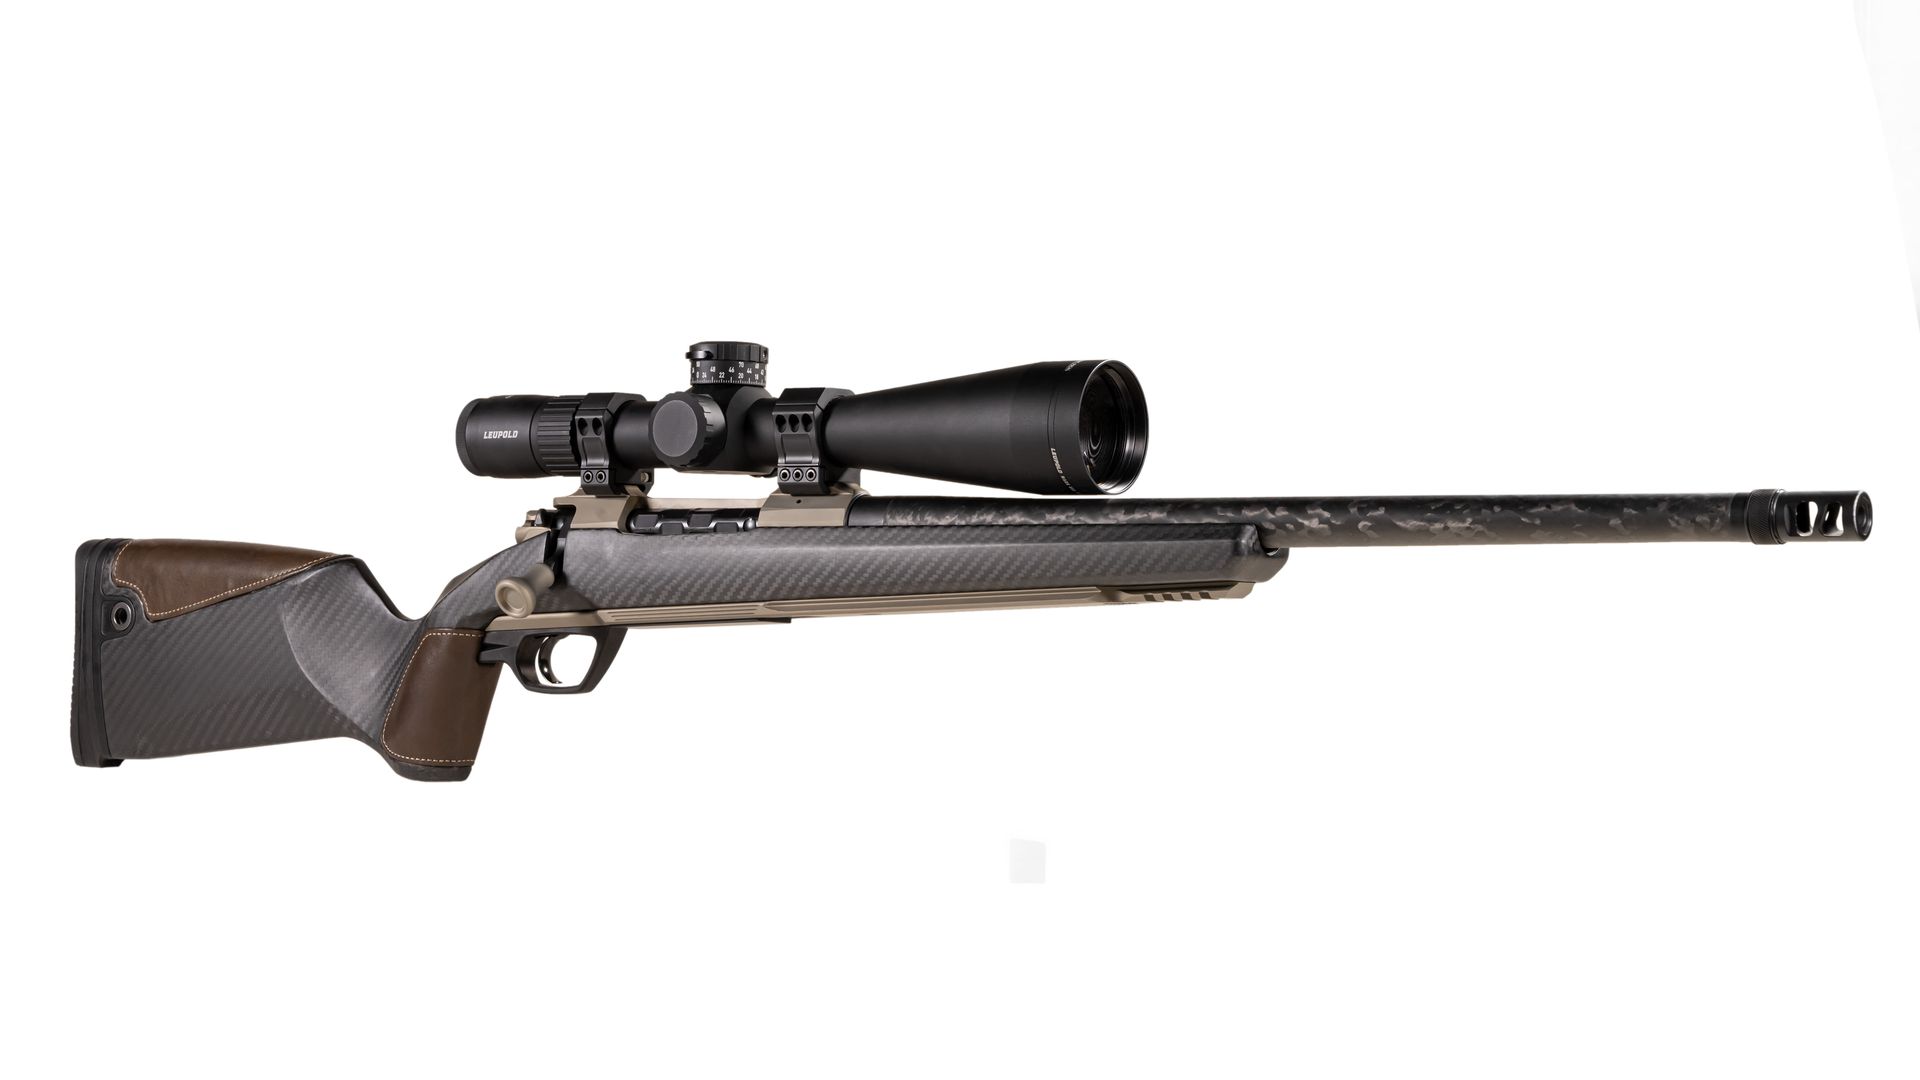 Nexus rifle with scope